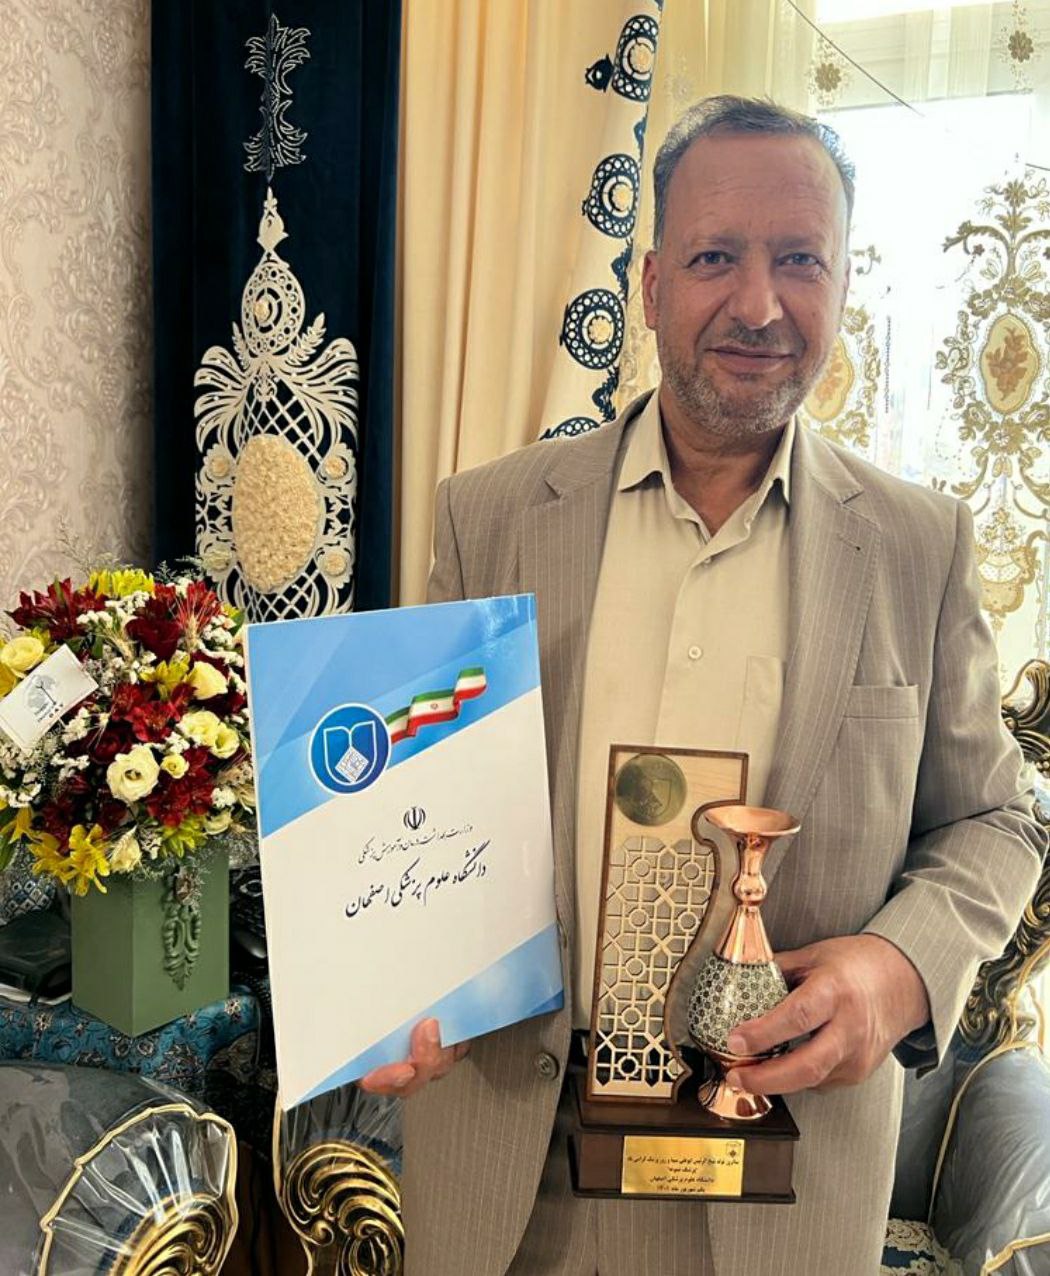 پیام تبریک شهردار به مناسبت انتخاب دکتر محمدرضا روستا به عنوان پزشک نمونه استان